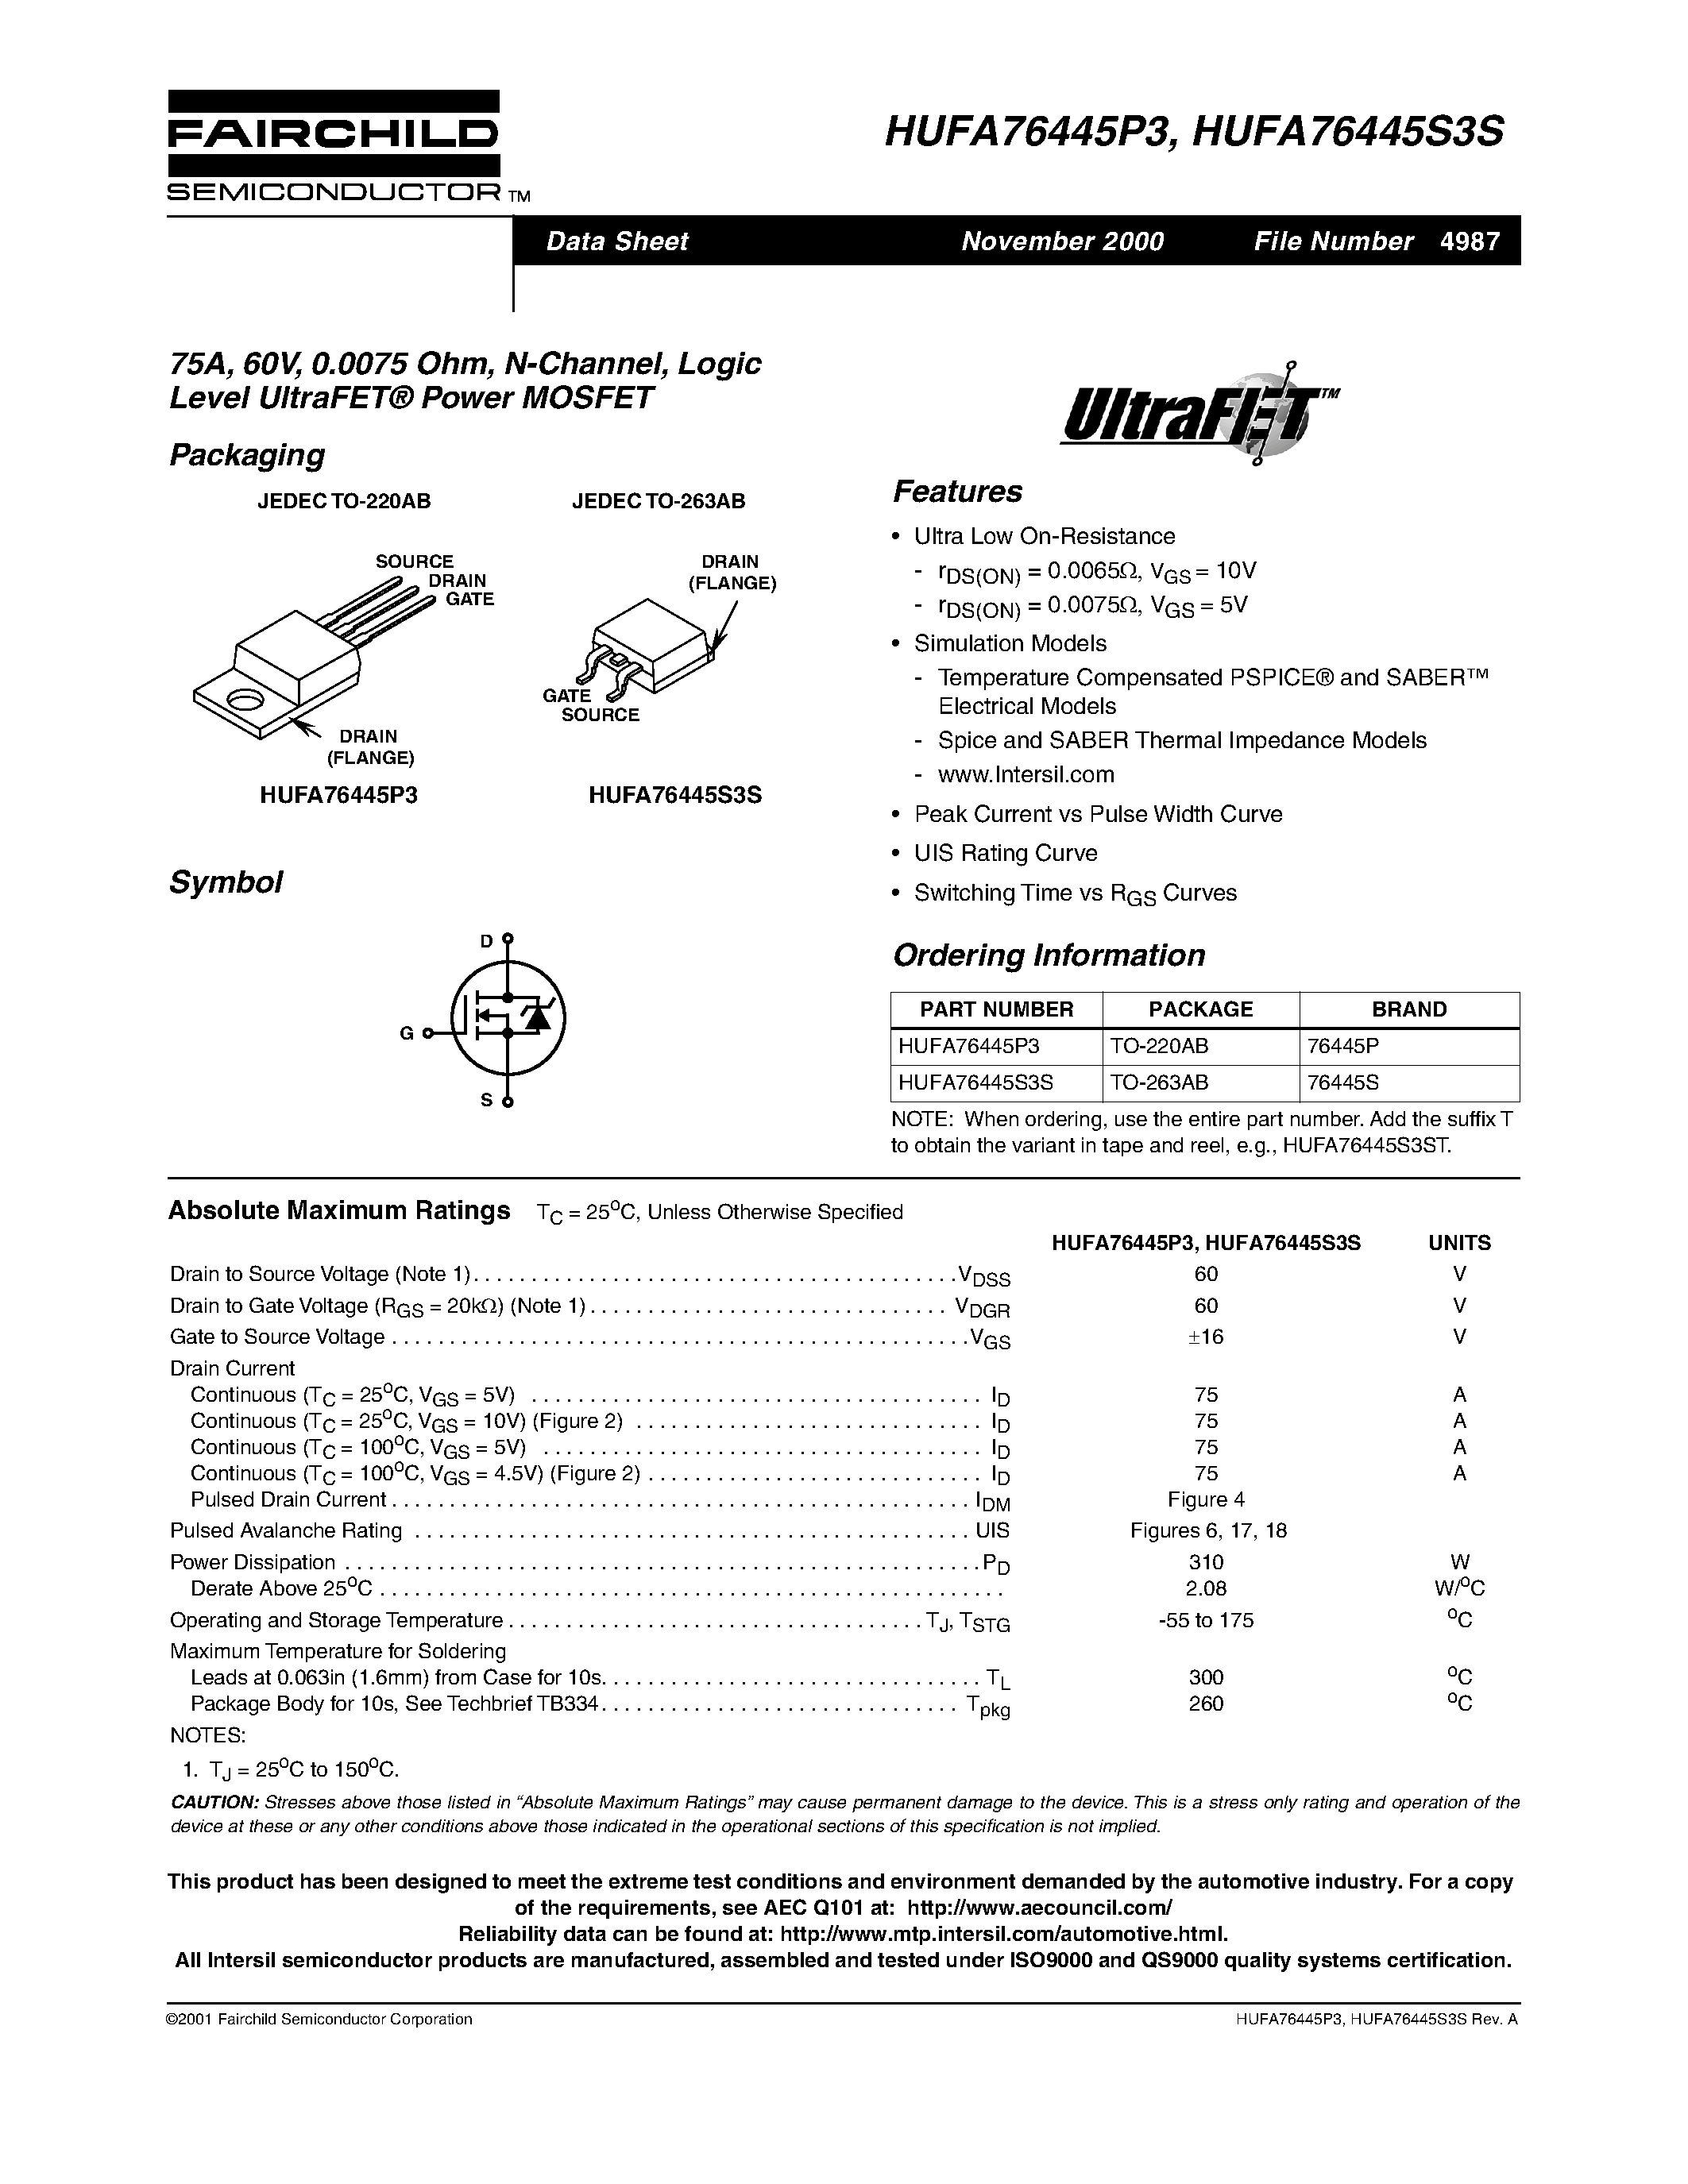 Даташит HUFA76445P3-75A/ 60V/ 0.0075 Ohm/ N-Channel/ Logic Level UltraFET Power MOSFET страница 1